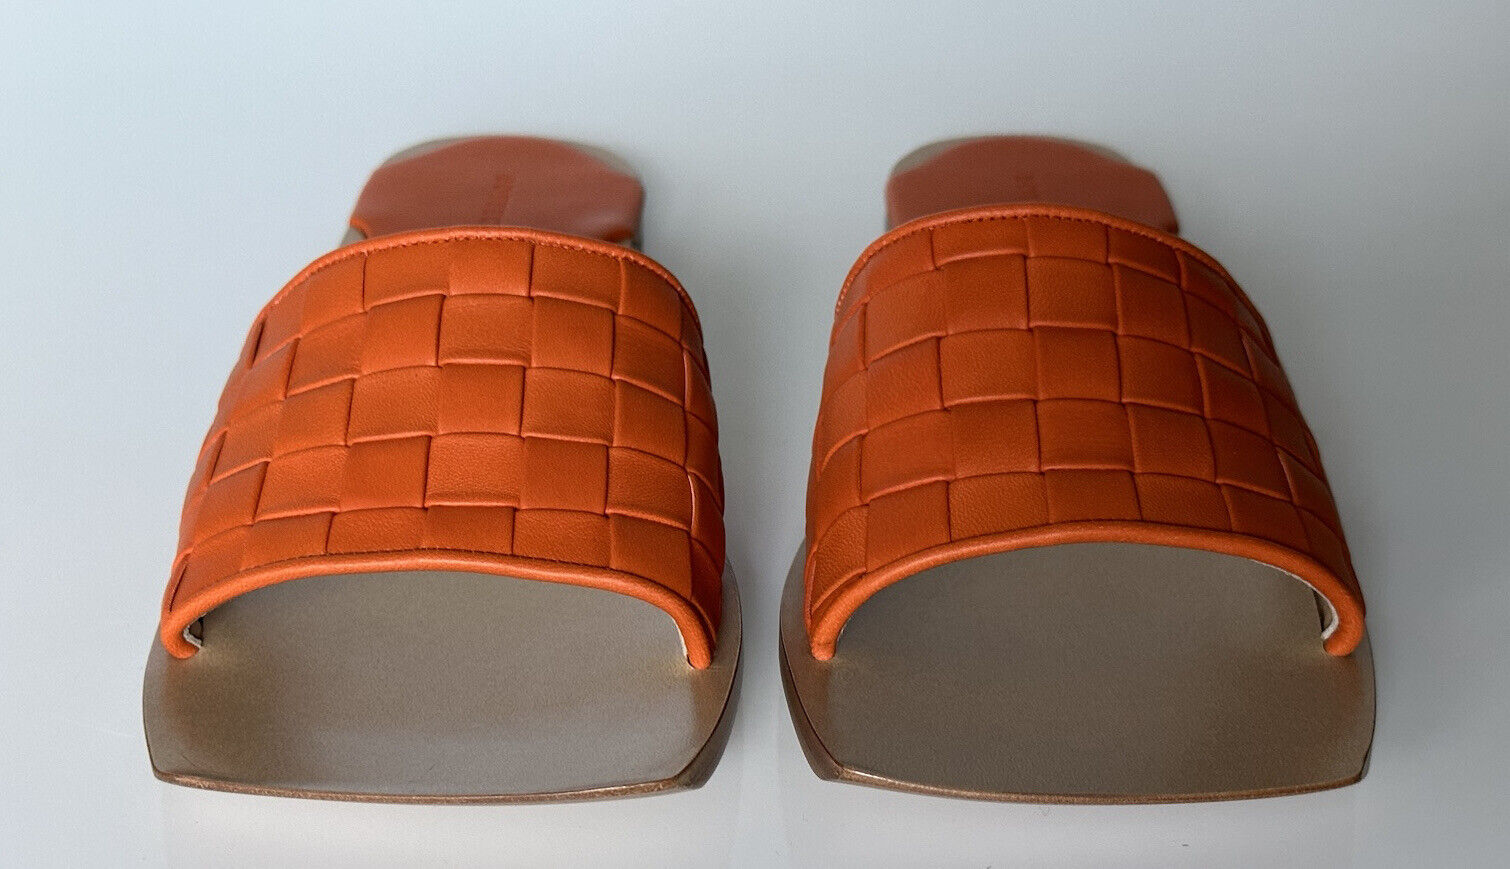 Кожаные сандалии без шнуровки Bottega Veneta Burned Orange за 620 долларов США 11 США (41) 578372 